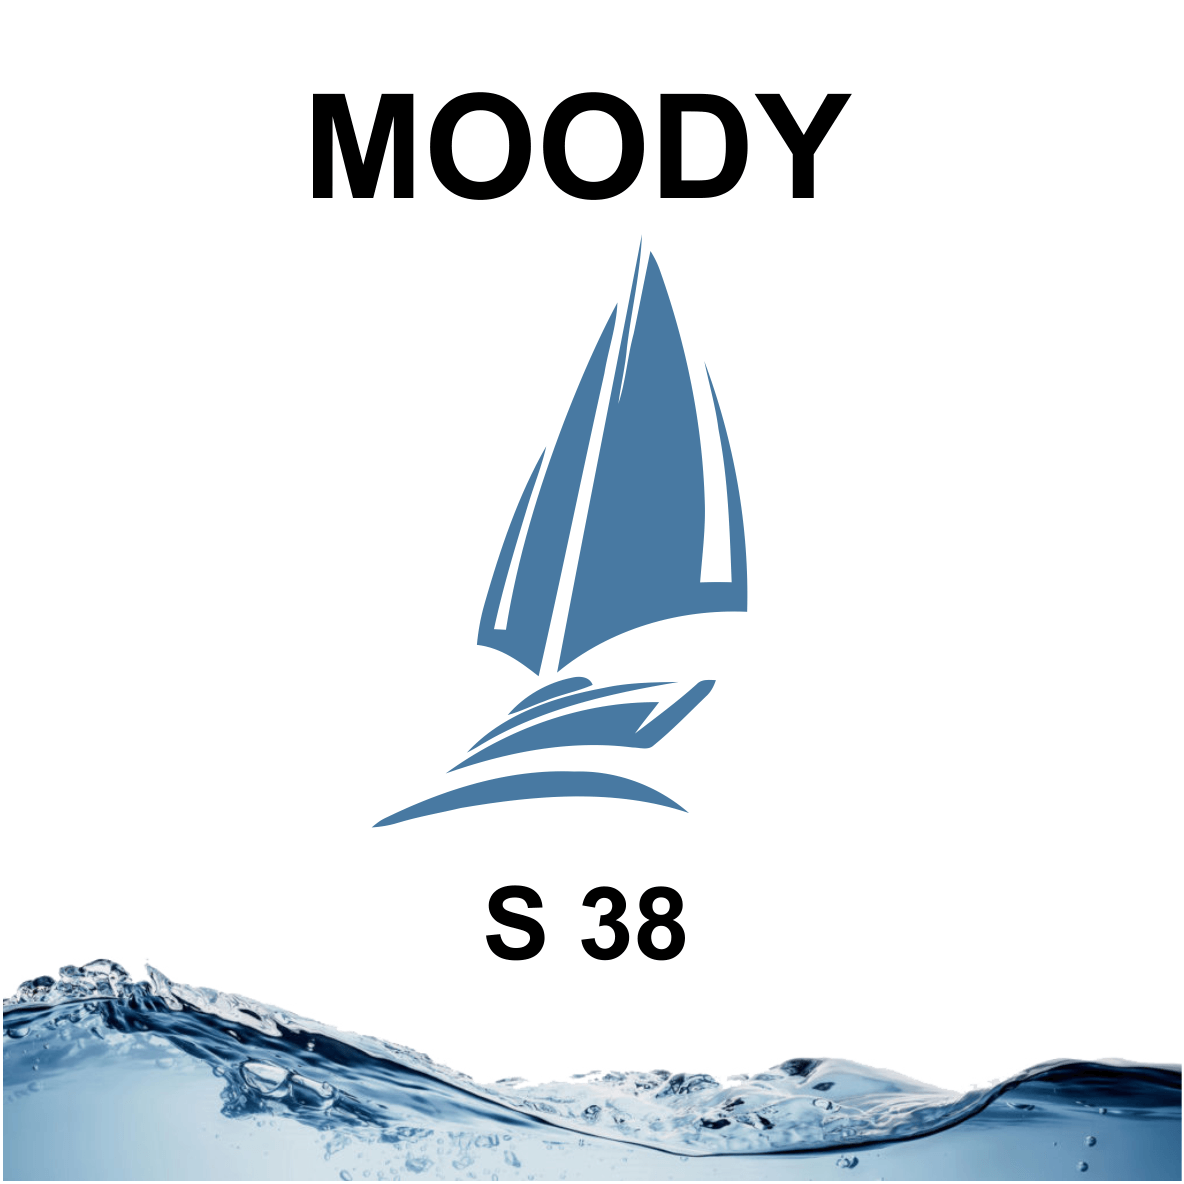 Moody S 38